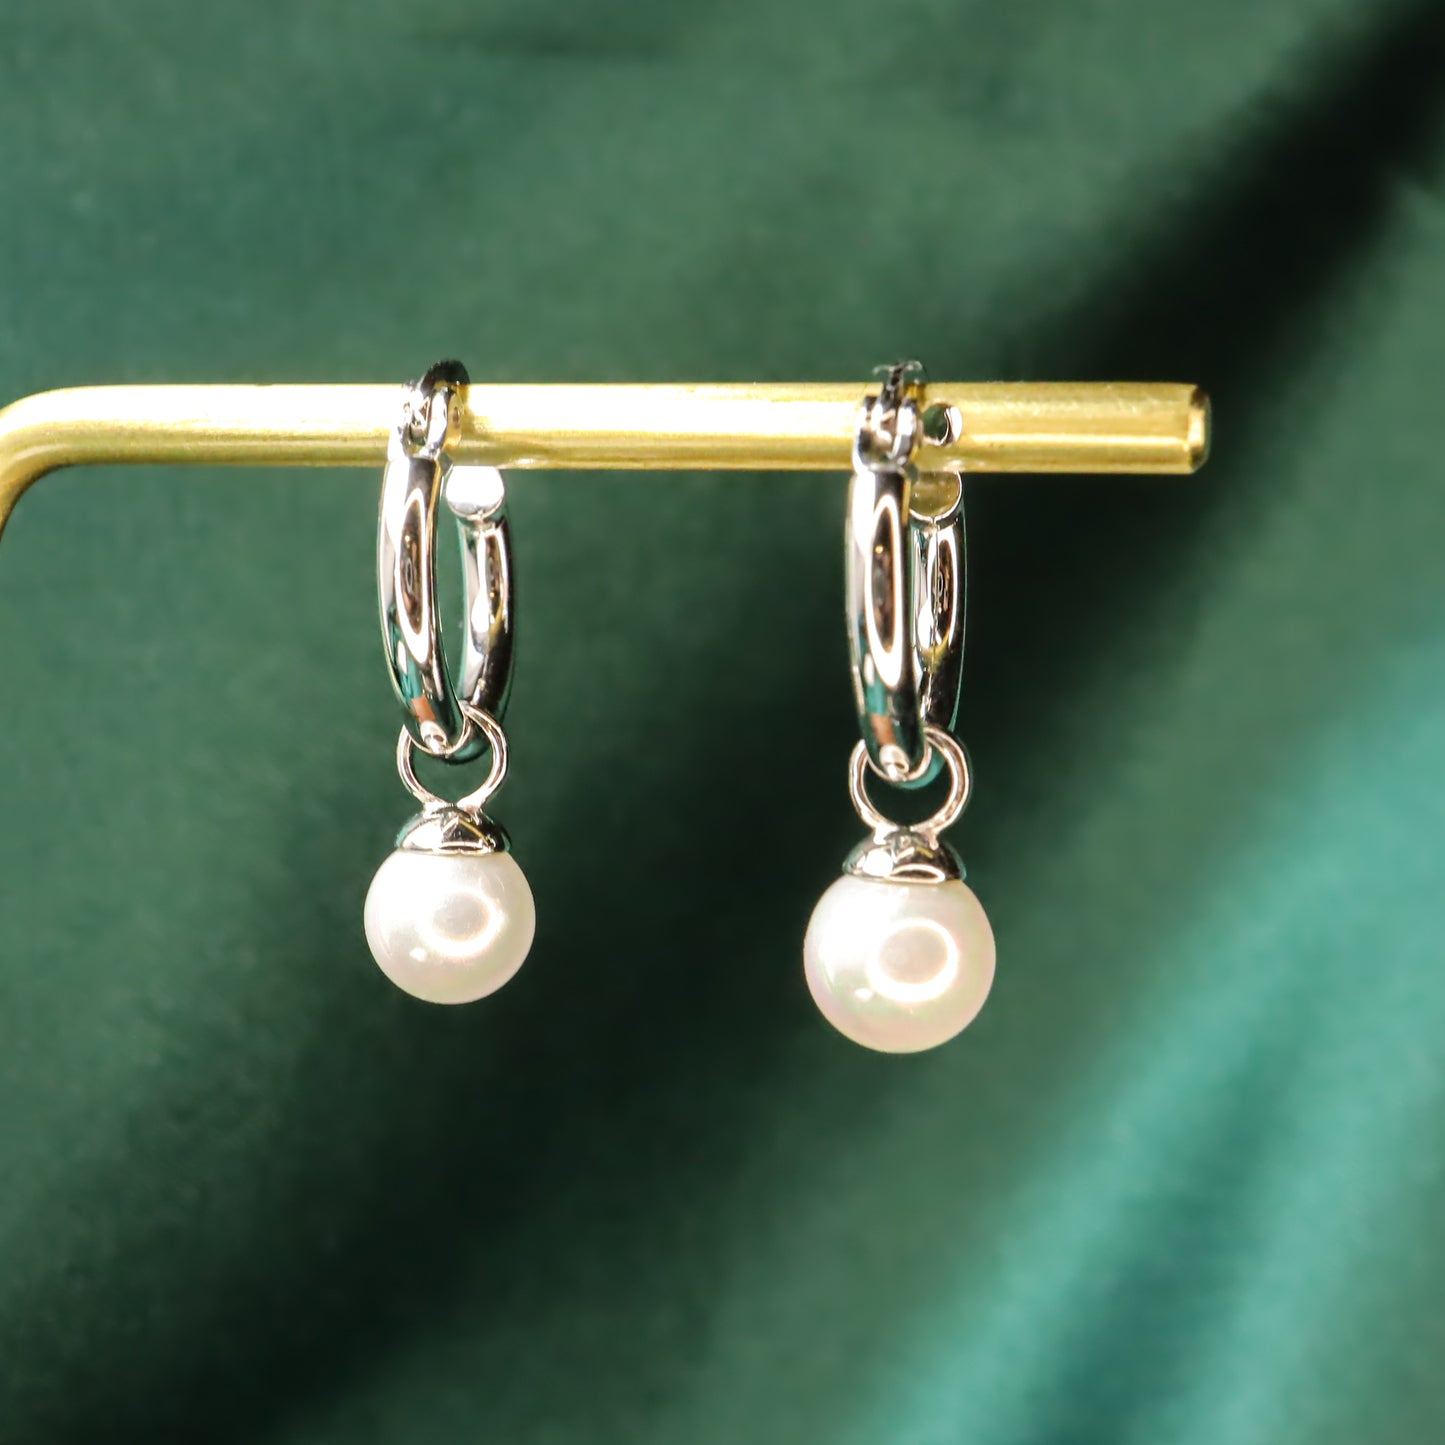 Pearl Lady - Vintage S925 Sterling Silver & Pearl Hoop Earrings (Color: Silver)